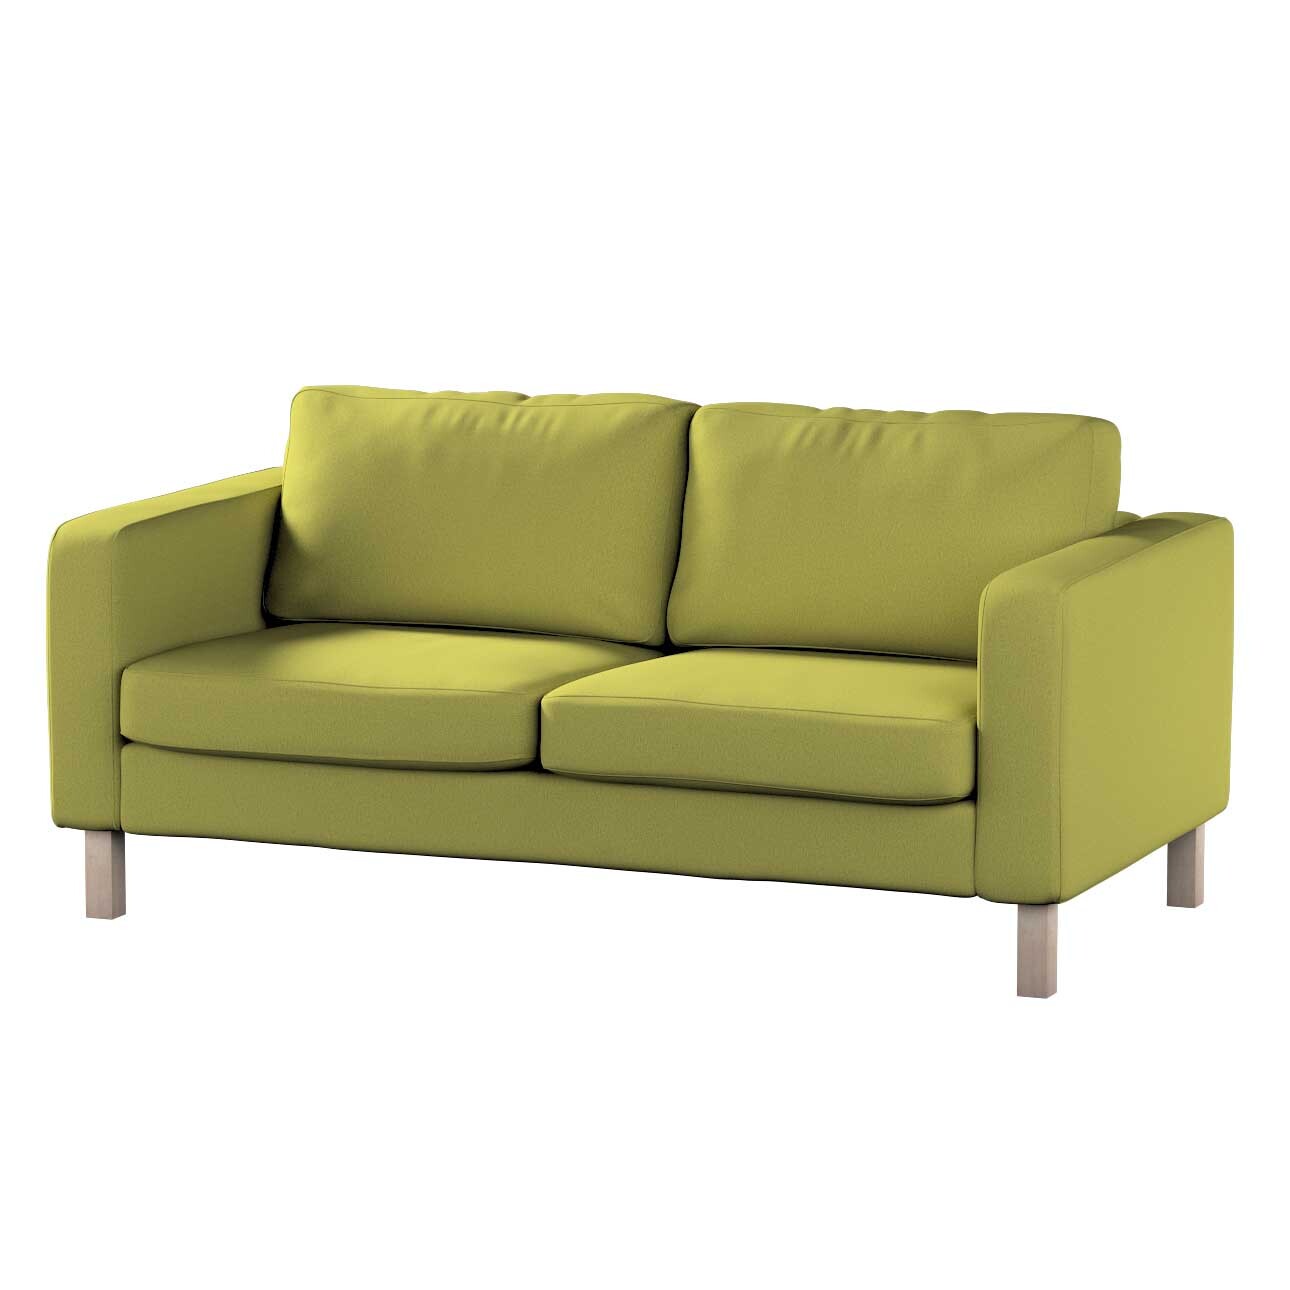 Bezug für Karlstad 2-Sitzer Sofa nicht ausklappbar, limone, Sofahusse, Karl günstig online kaufen